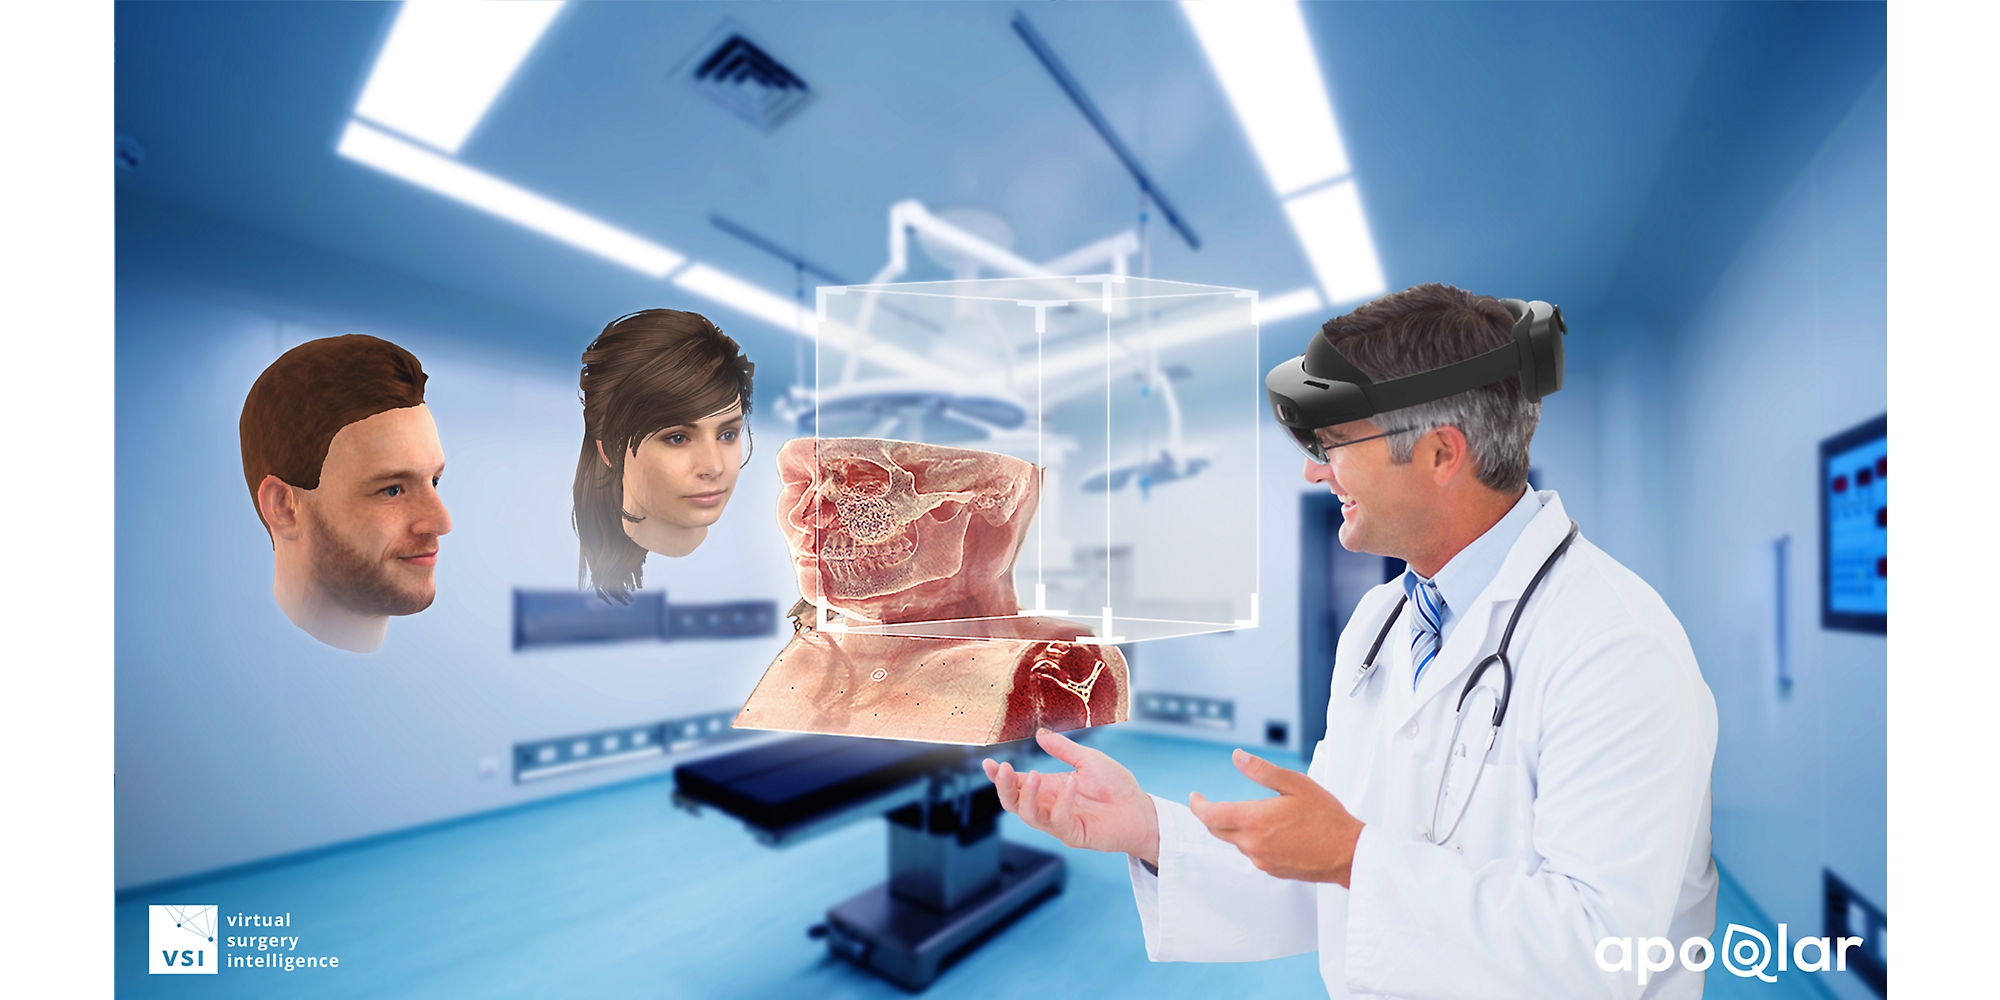 Un medico che usa un dispositivo HoloLens 2 per visualizzare un diagramma medico e parla con altre due persone in realtà mista.